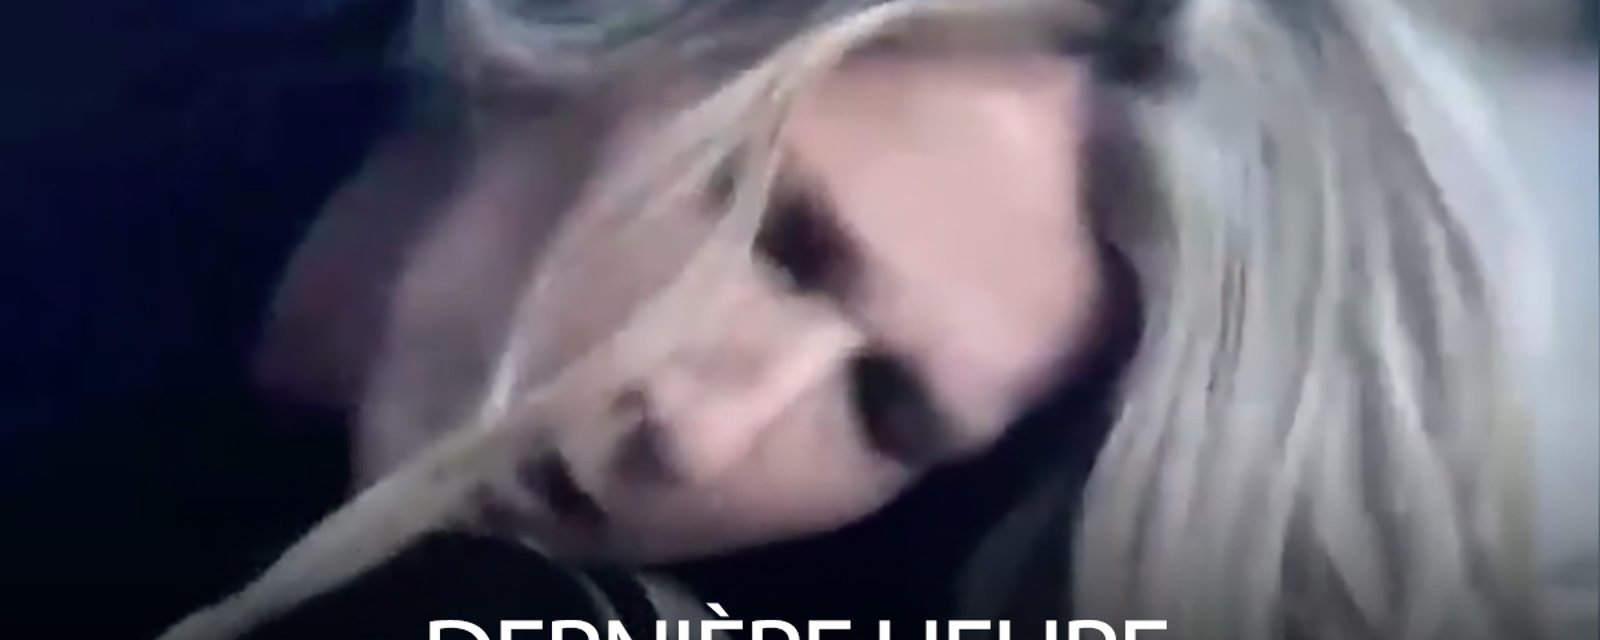 DERNIÈRE HEURE: Céline Dion arrêtée par la police dans une étrange vidéo